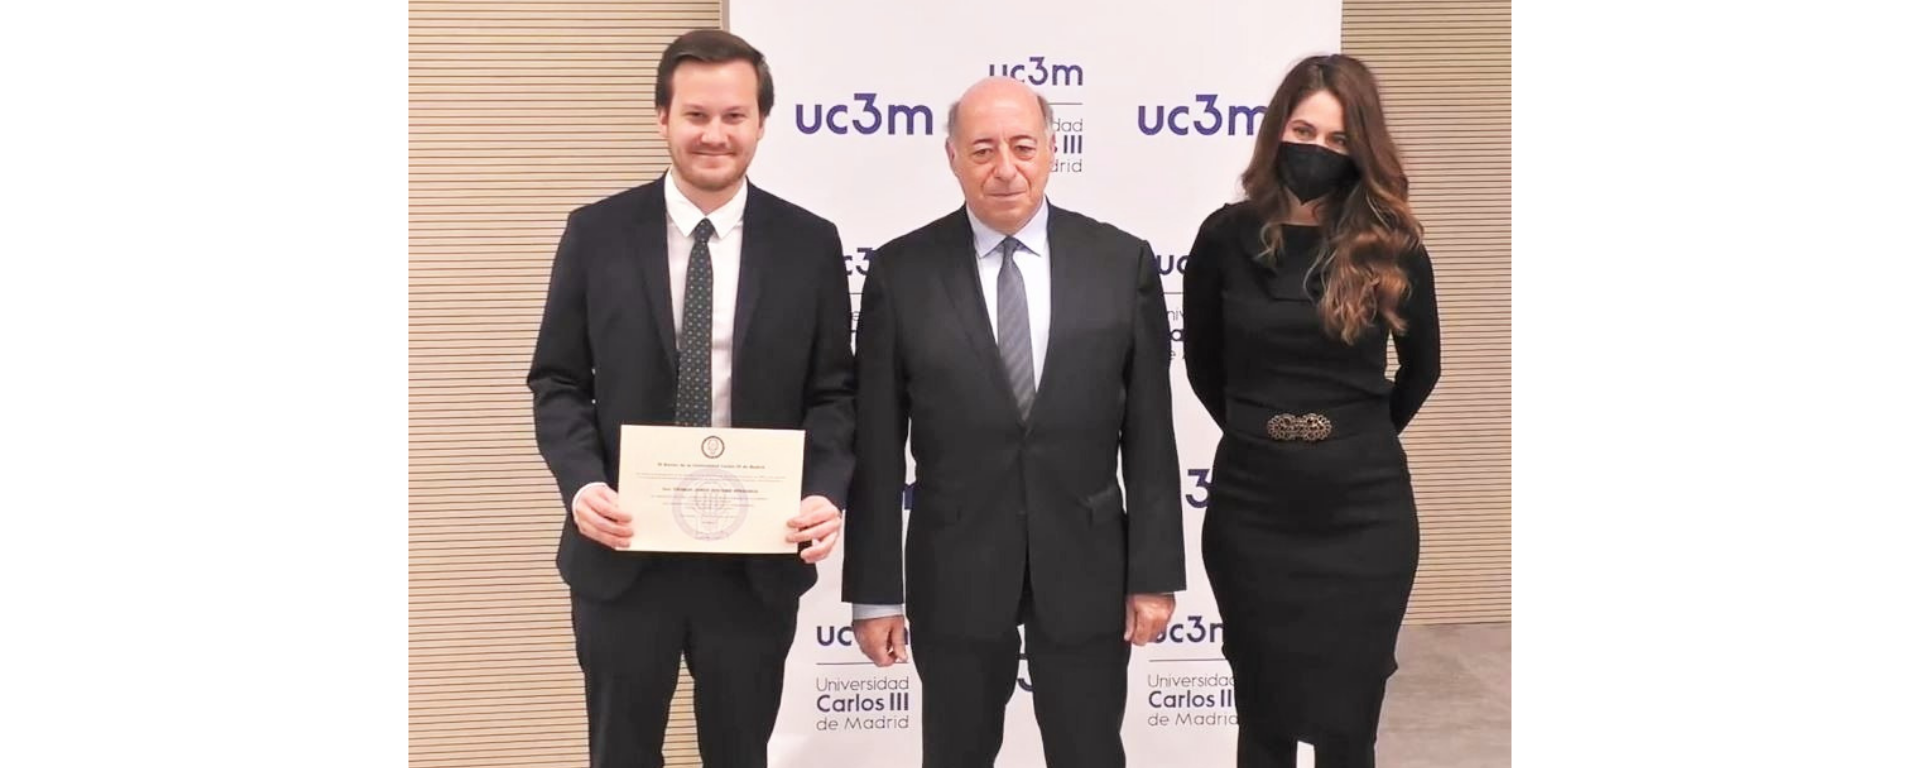 Graduado de FDER ganó el Premio Extraordinario al Mejor Expediente Académico en Universidad Carlos III de Madrid